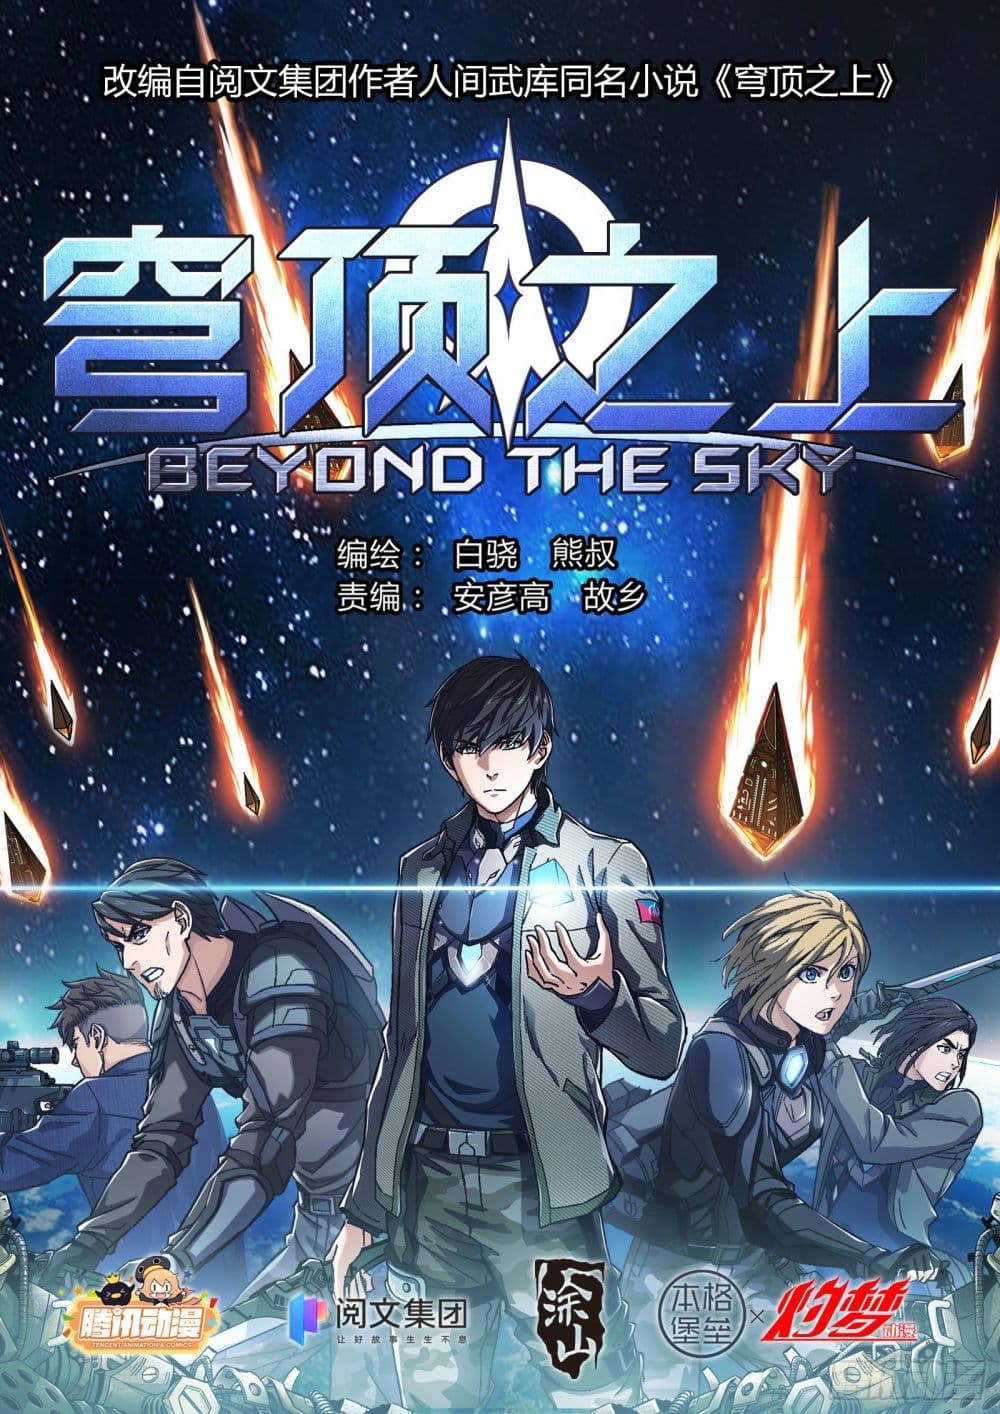 Beyond The Sky 19 (1)